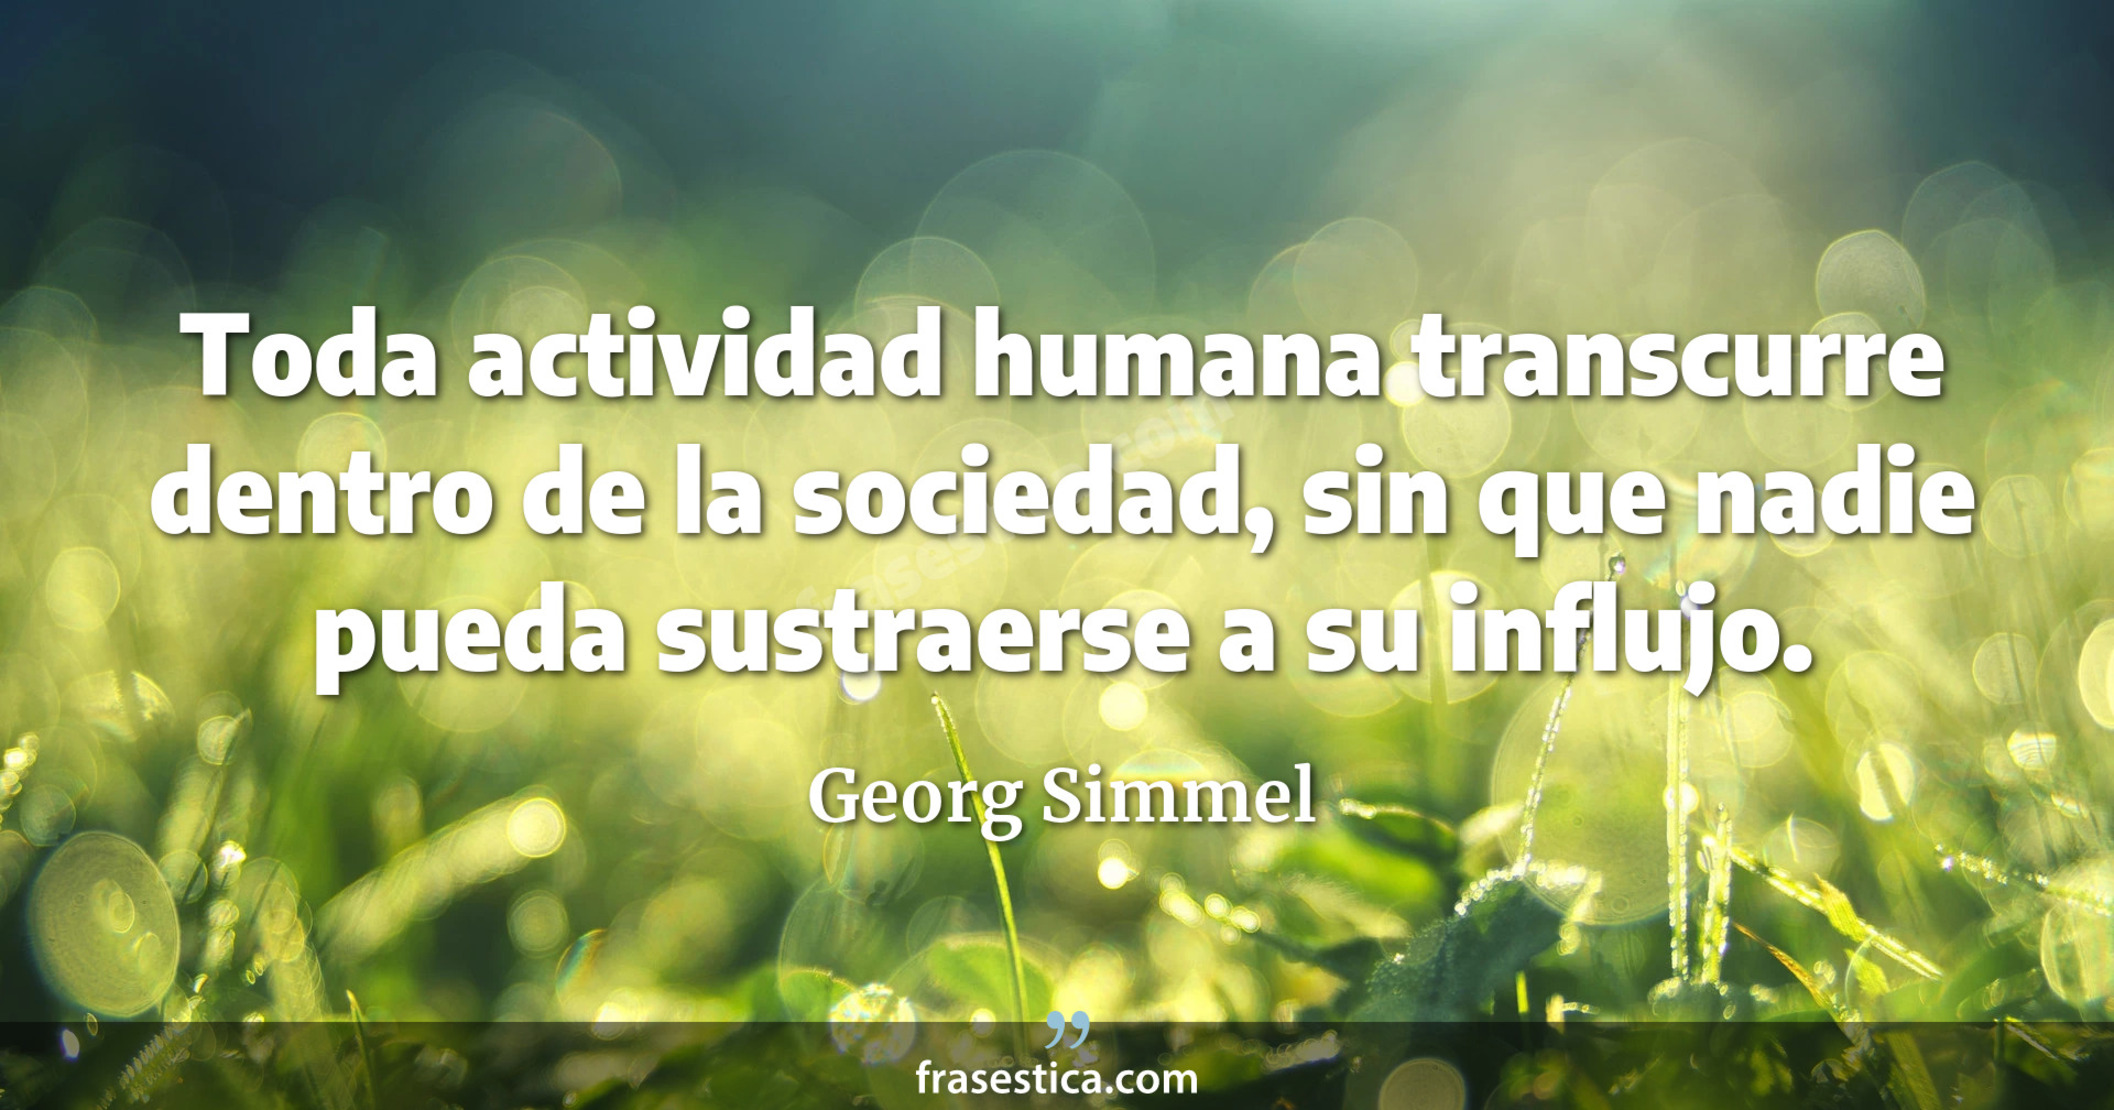 Toda actividad humana transcurre dentro de la sociedad, sin que nadie pueda sustraerse a su influjo. - Georg Simmel